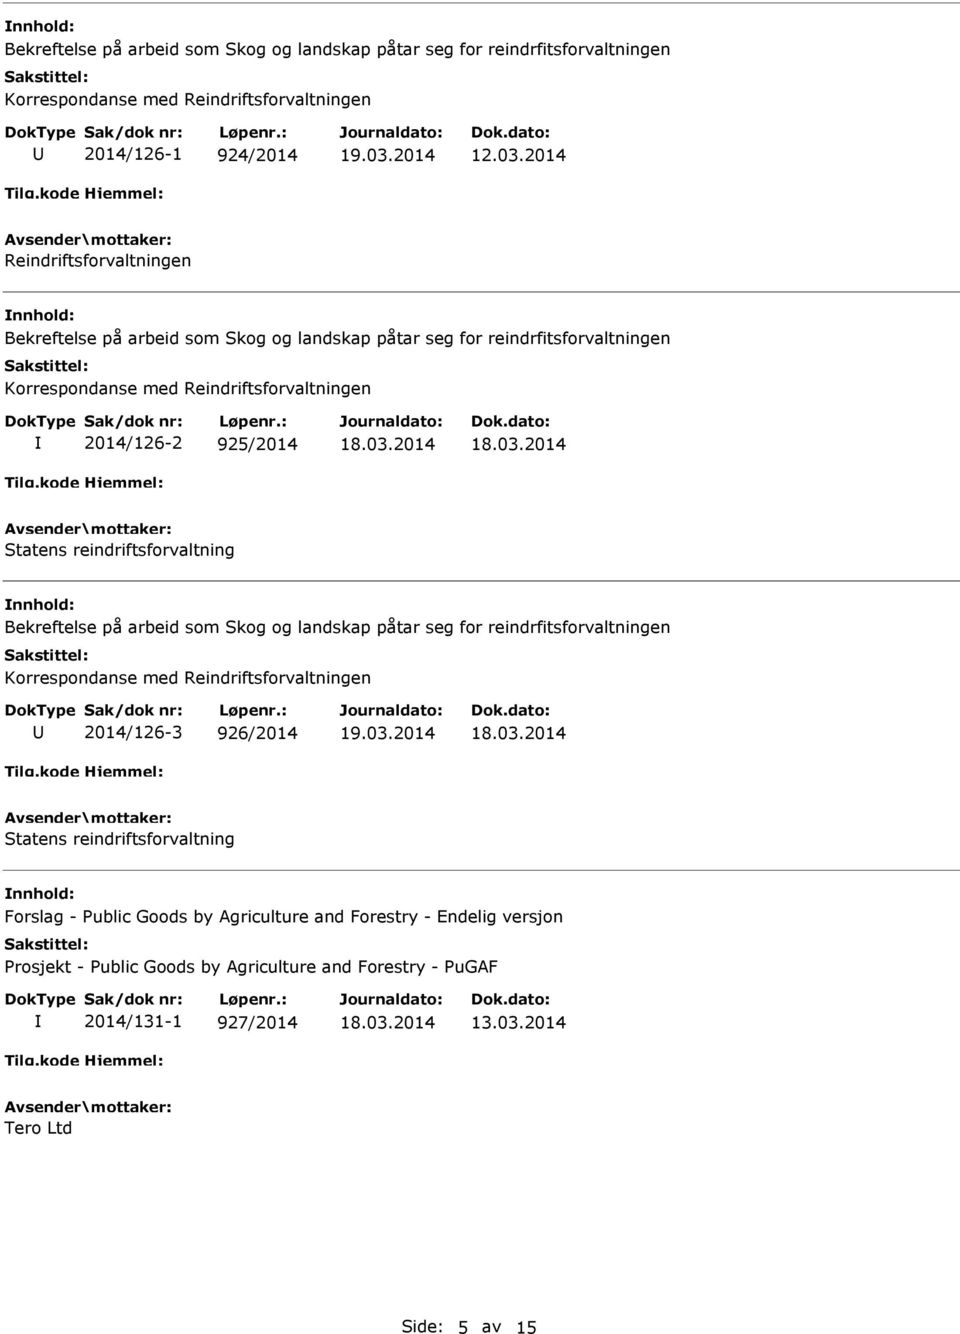 Statens reindriftsforvaltning Bekreftelse på arbeid som Skog og landskap påtar seg for reindrfitsforvaltningen Korrespondanse med Reindriftsforvaltningen 2014/126-3 926/2014